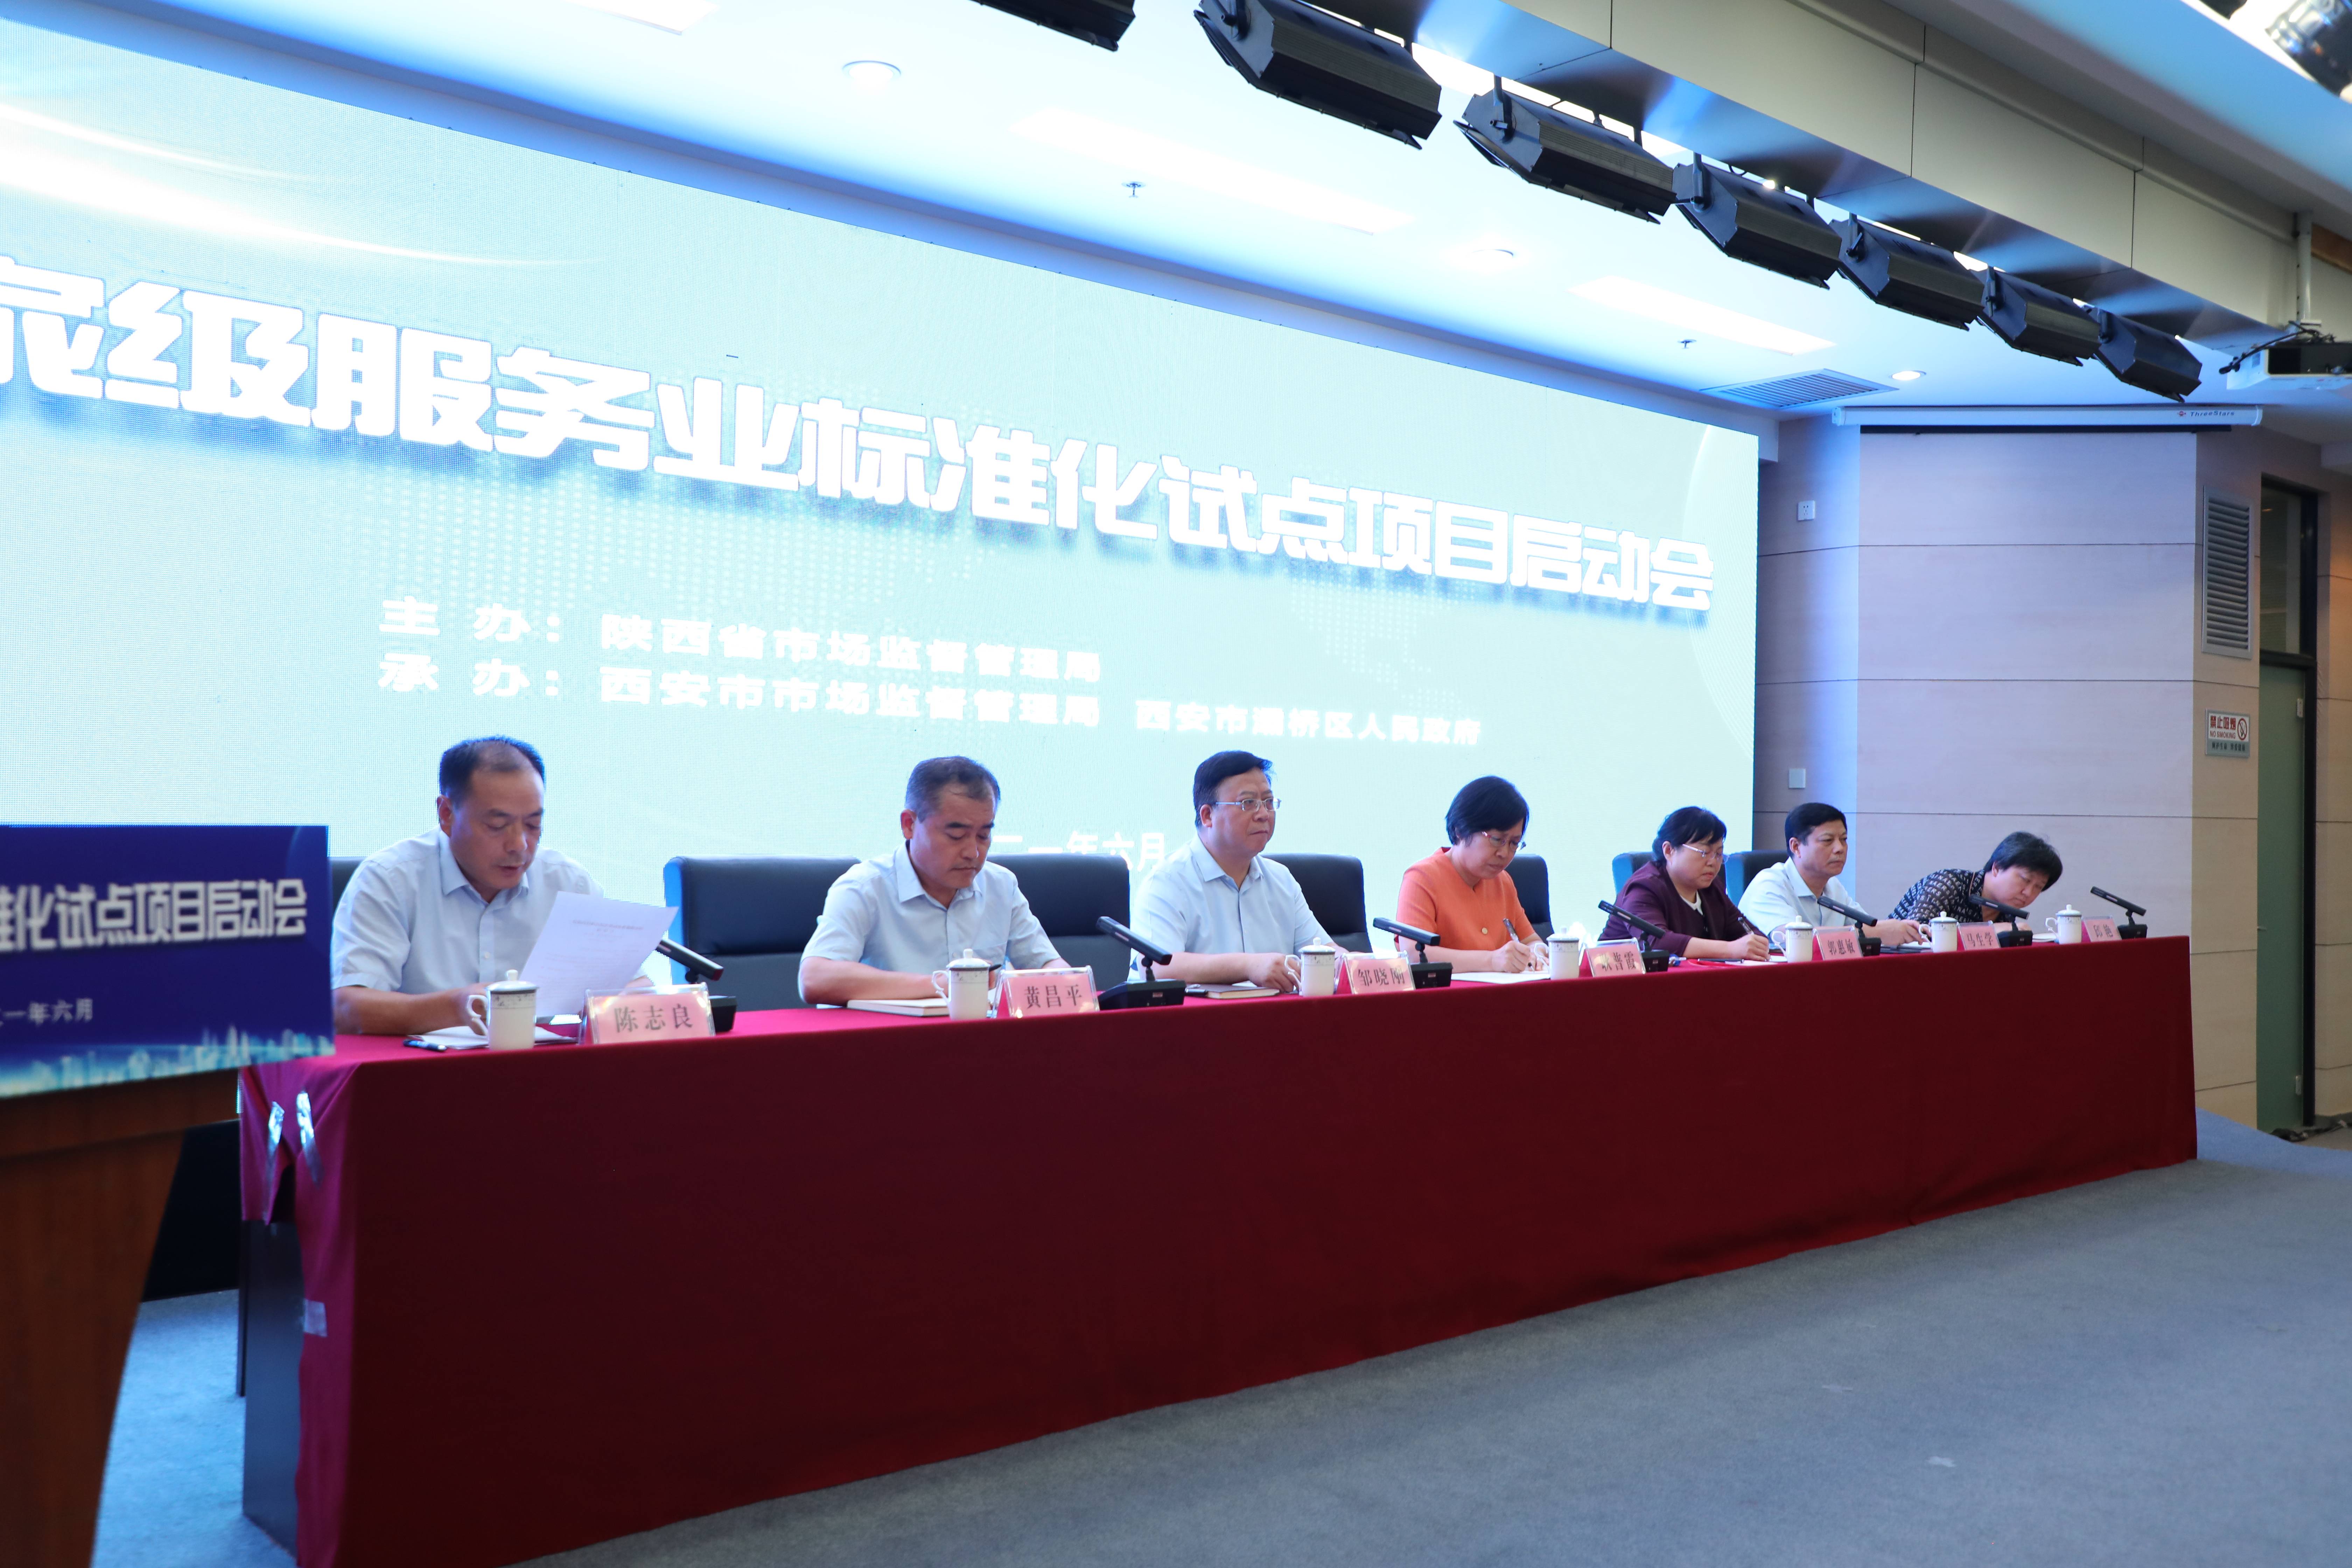 陕西省国家级效率业尺度化试点名目启动会在灞桥区举行